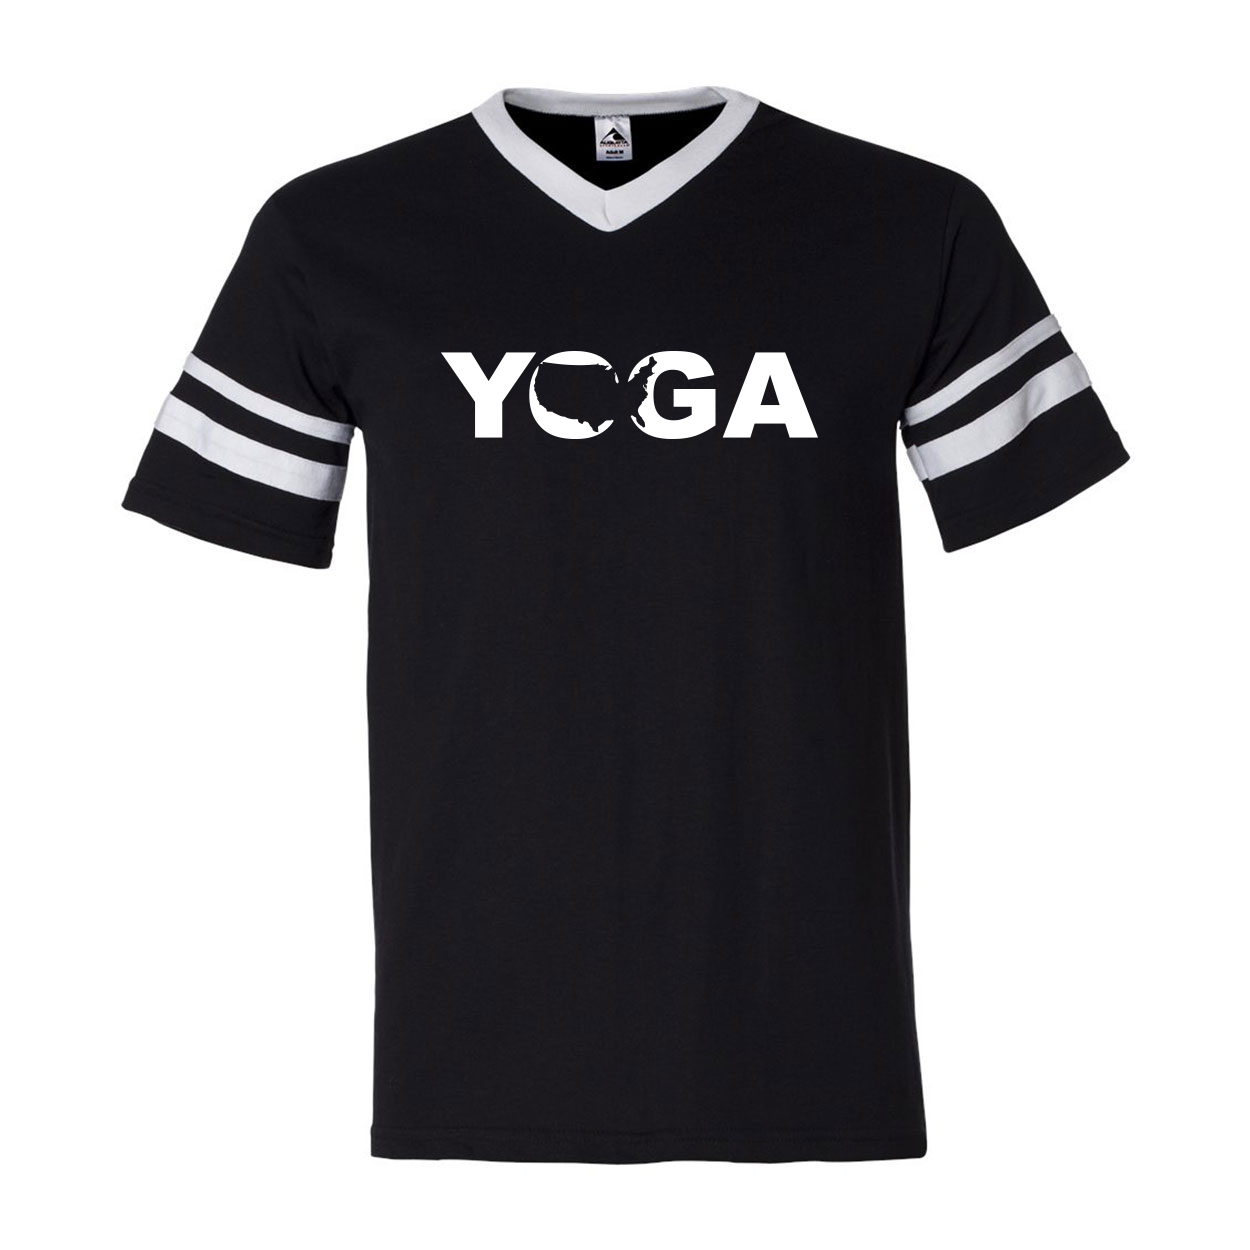 Yoga United States Classic Premium Striped Jersey T-Shirt Black/White (White Logo)